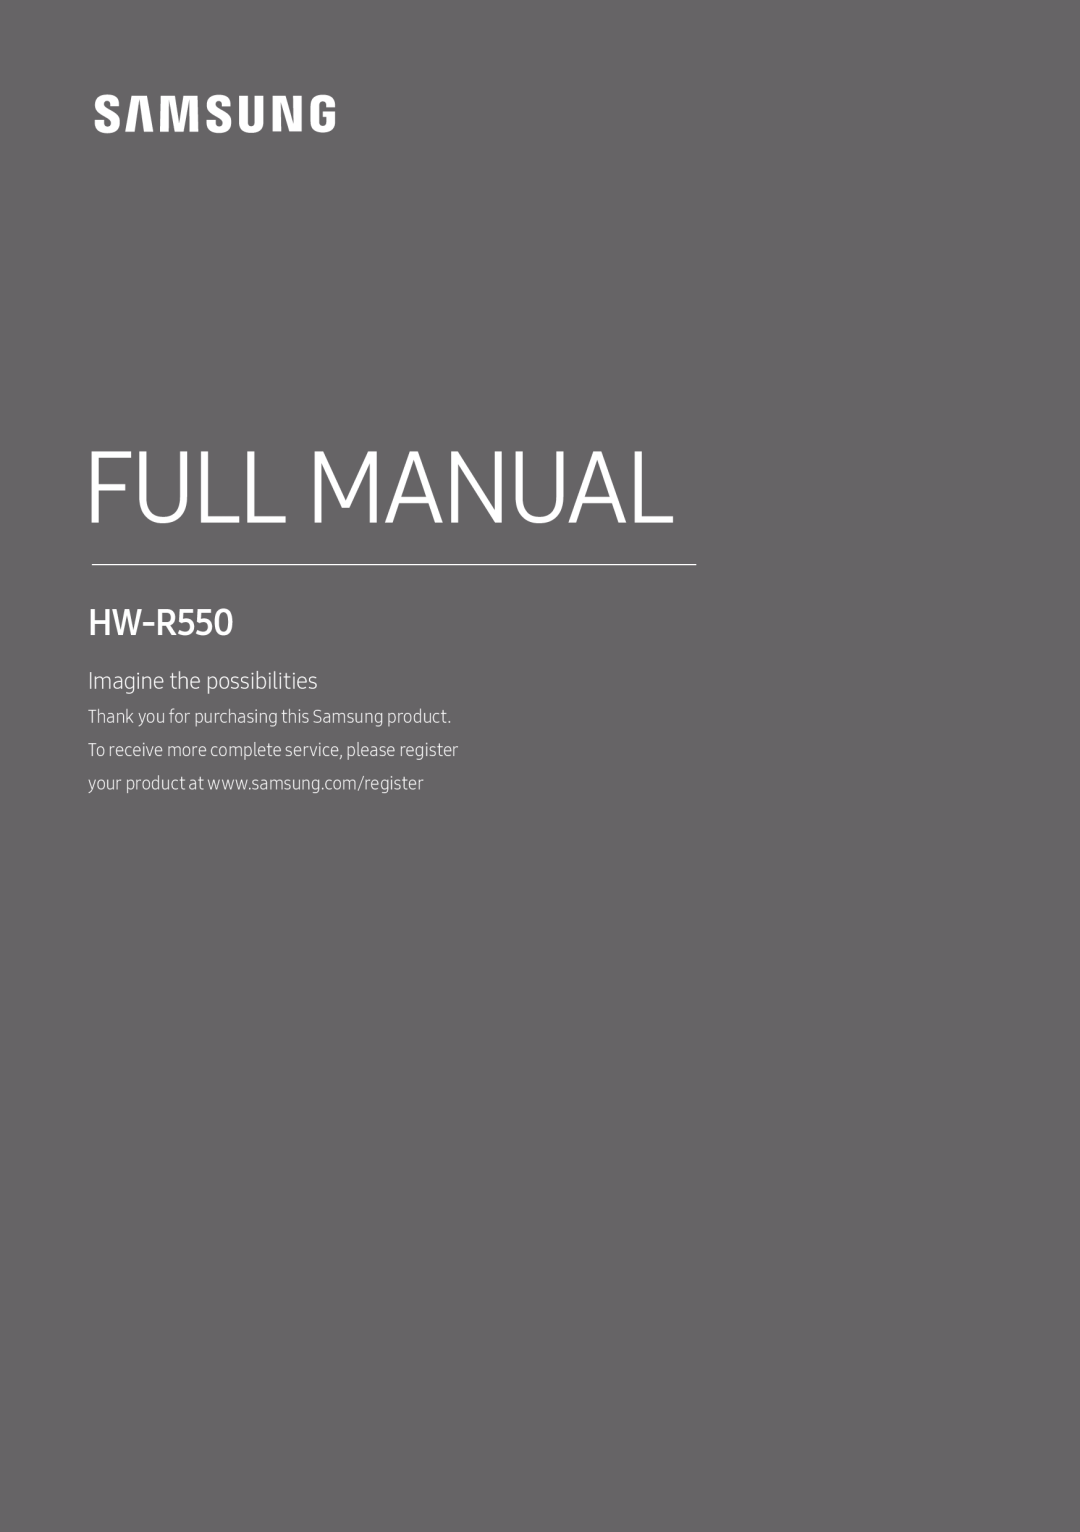 HW-R550 Standard HW-R550